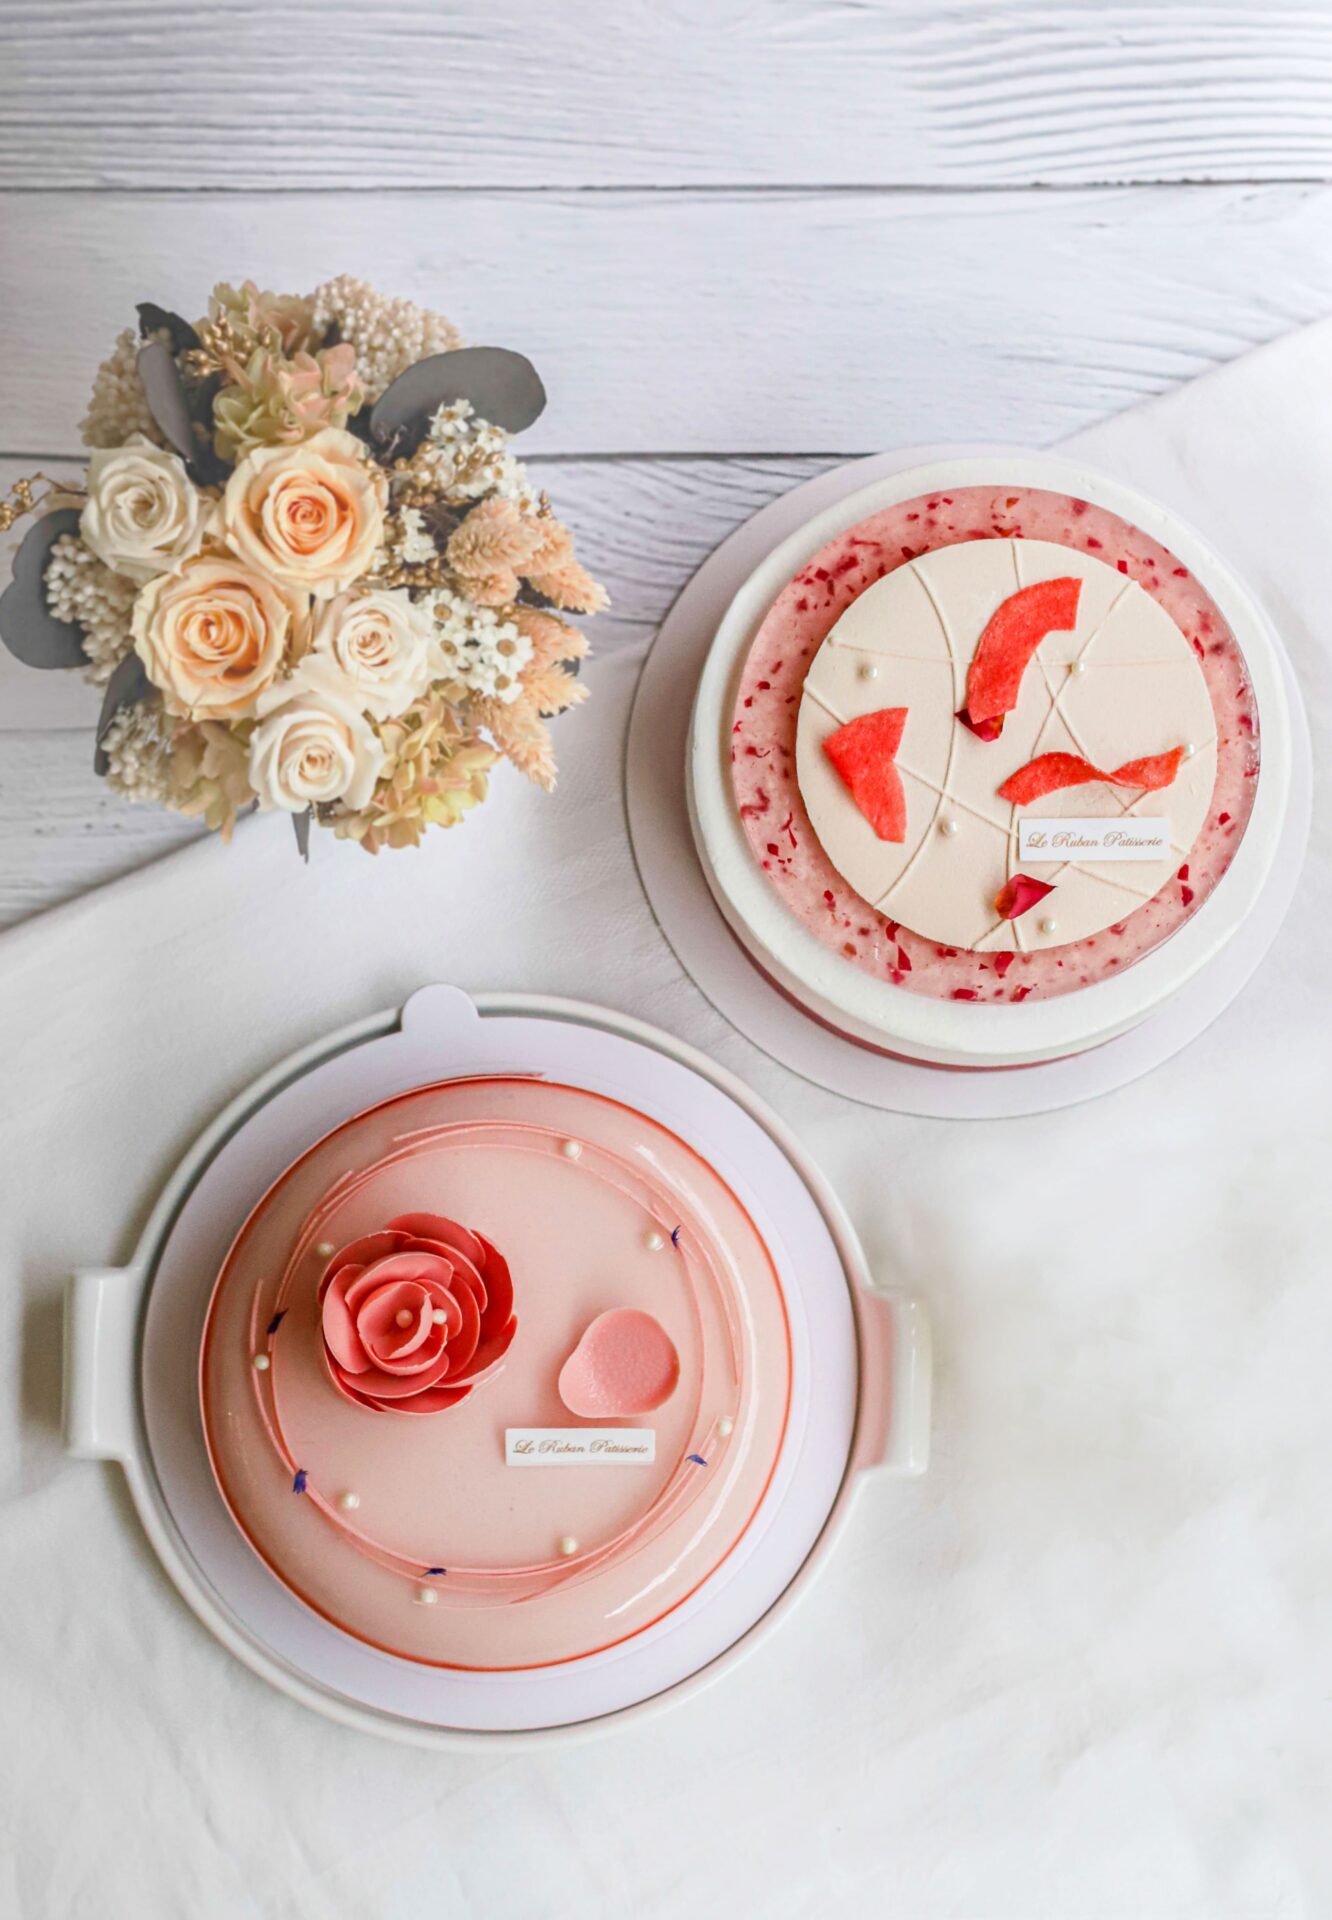 「法朋烘焙甜點坊 」 今年母親節為媽媽們研發設計出帶有酸甜風味的《嫣紅萬紫》和果香十足《蜜桃花語》兩款蛋糕 。